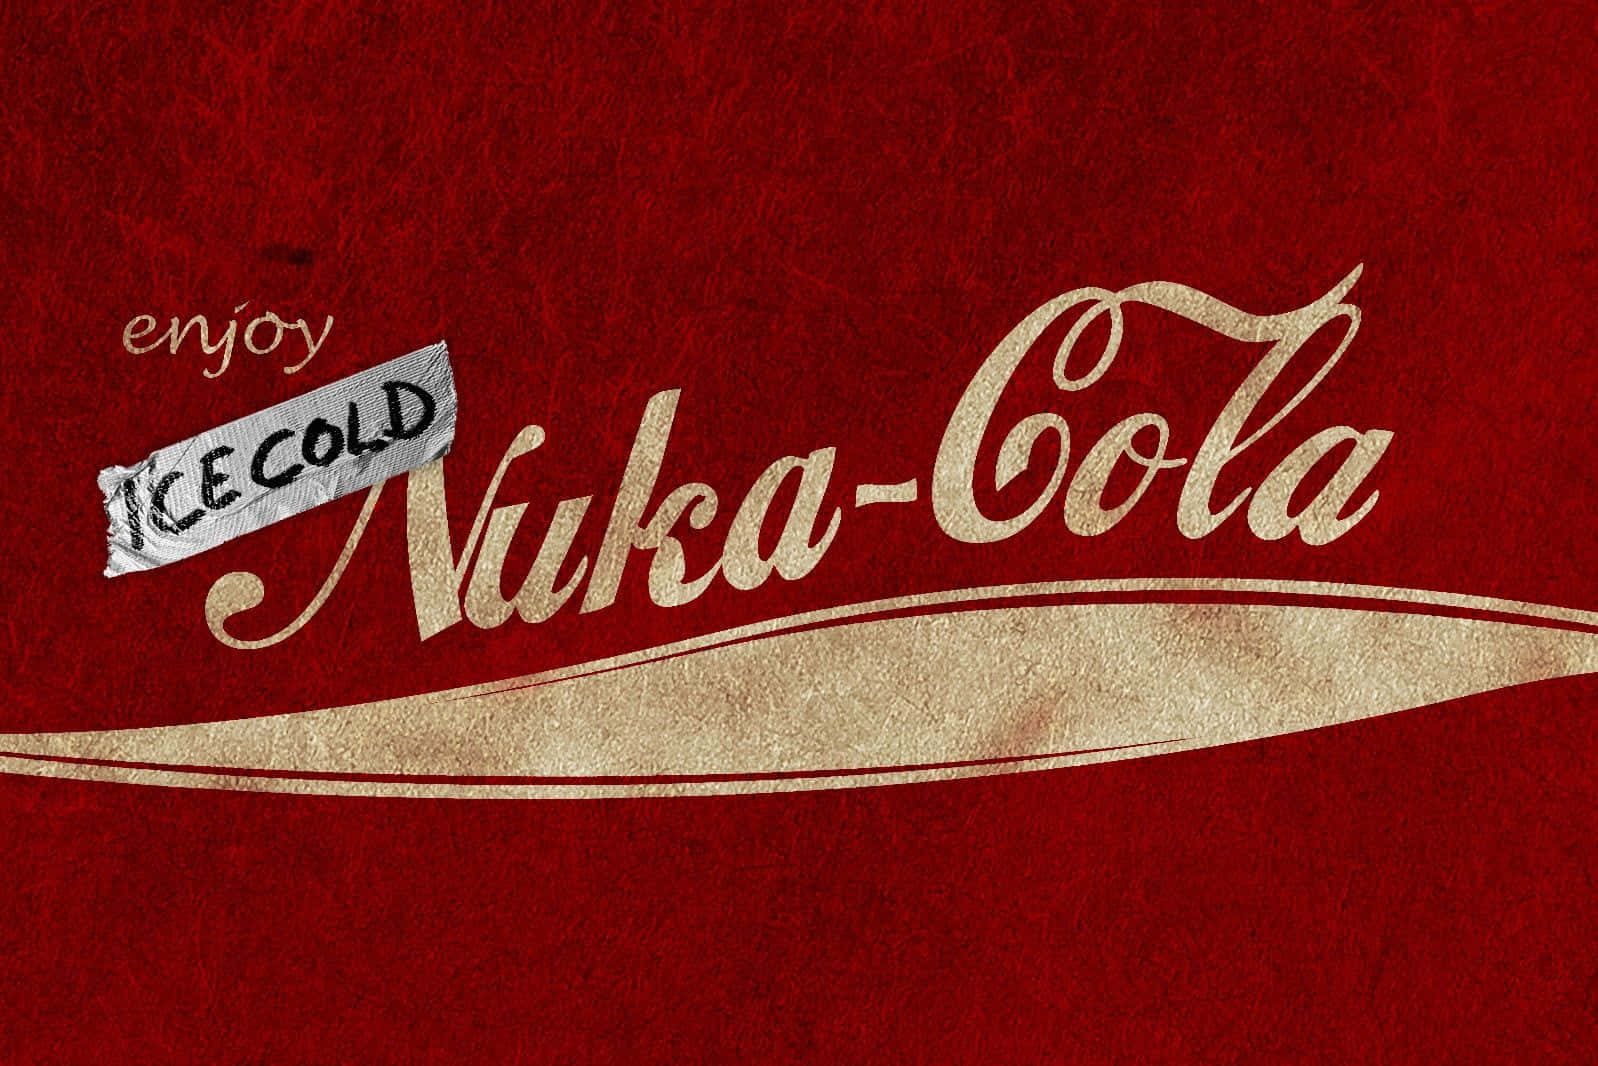 Eincoca Cola-logo Mit Den Worten Nuka Cola. Wallpaper